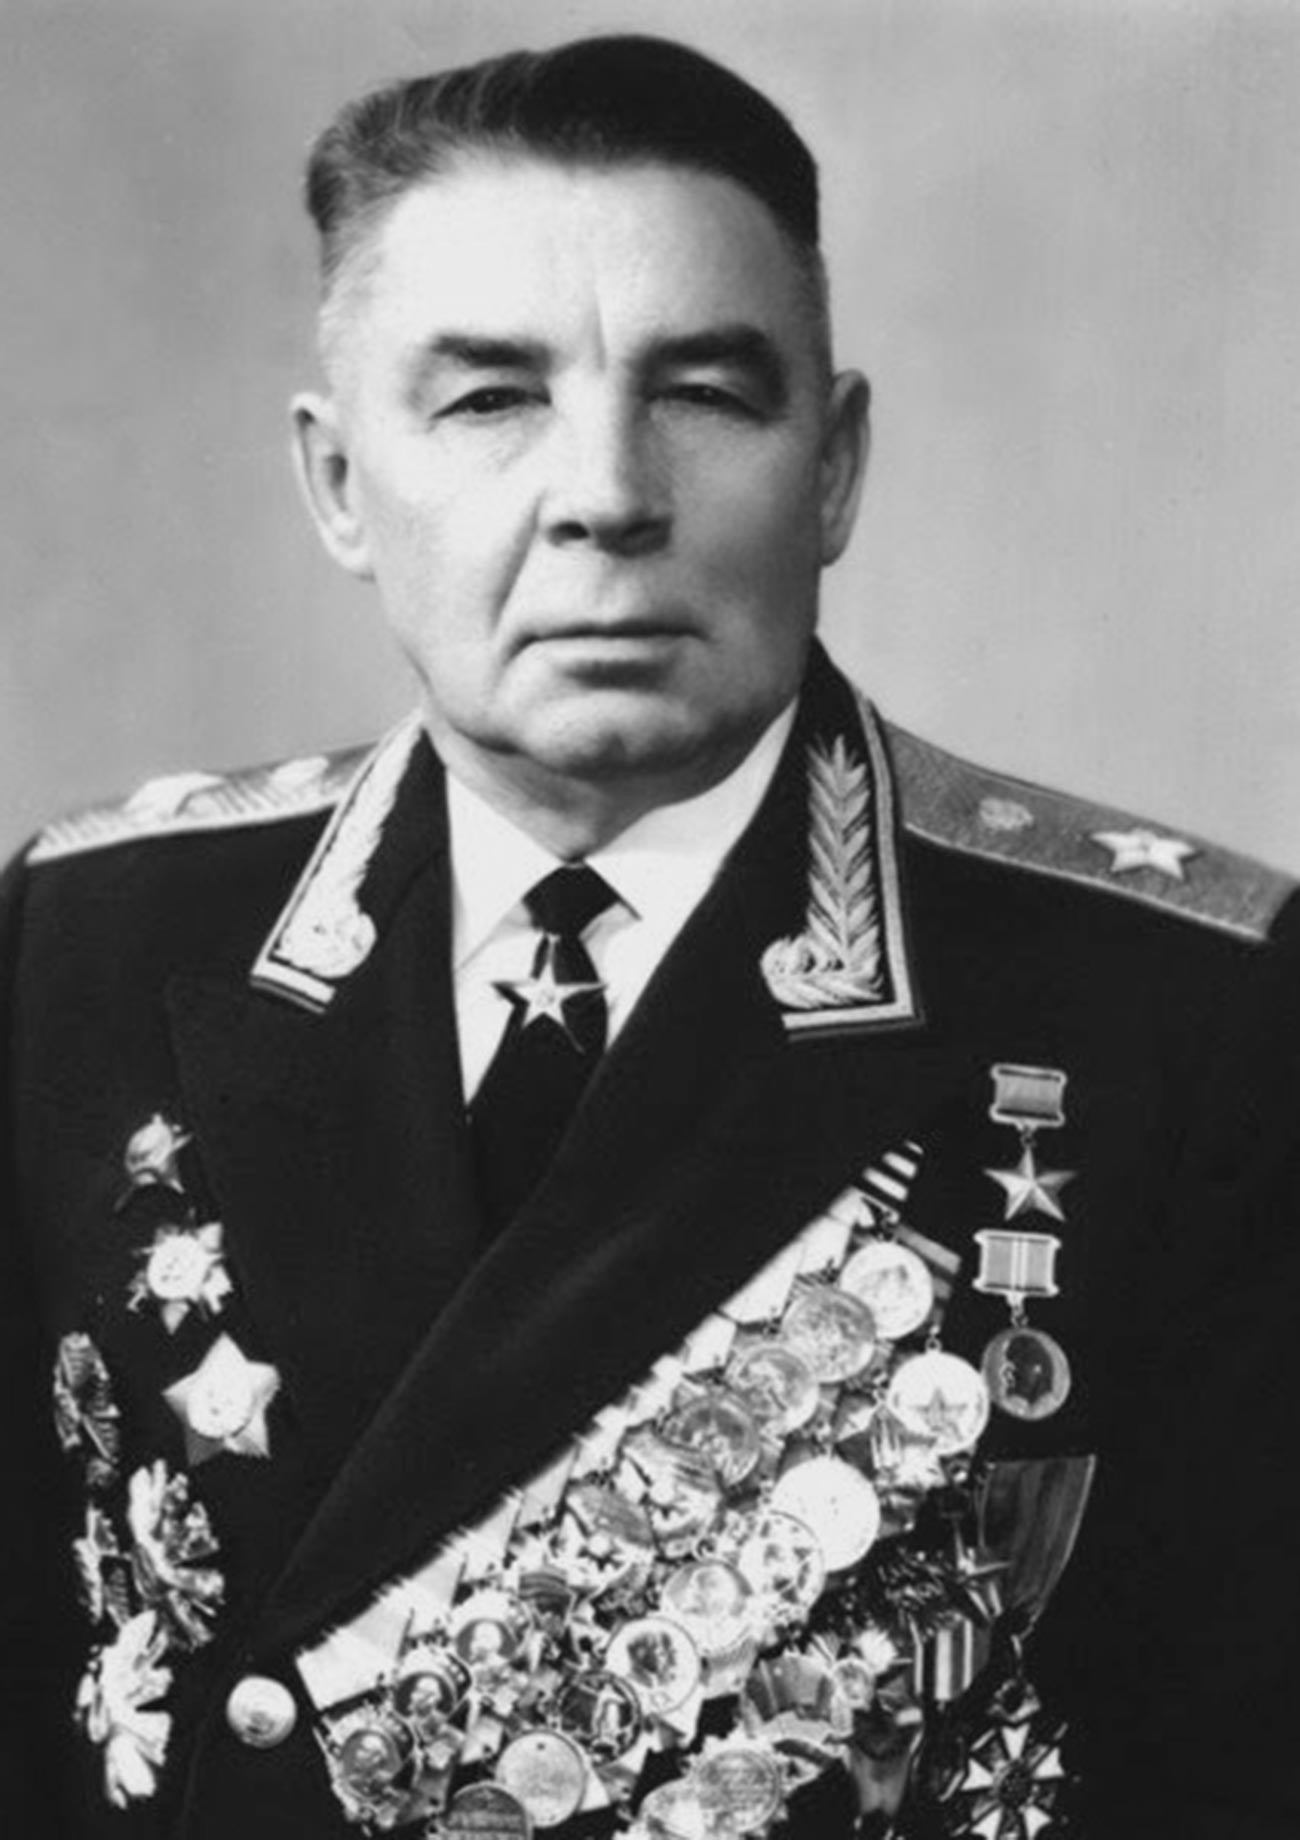 Poveljnik desantno-padalskih enot (1954-1959 in 1961-1979), general Vasilij Filipovič Margelov